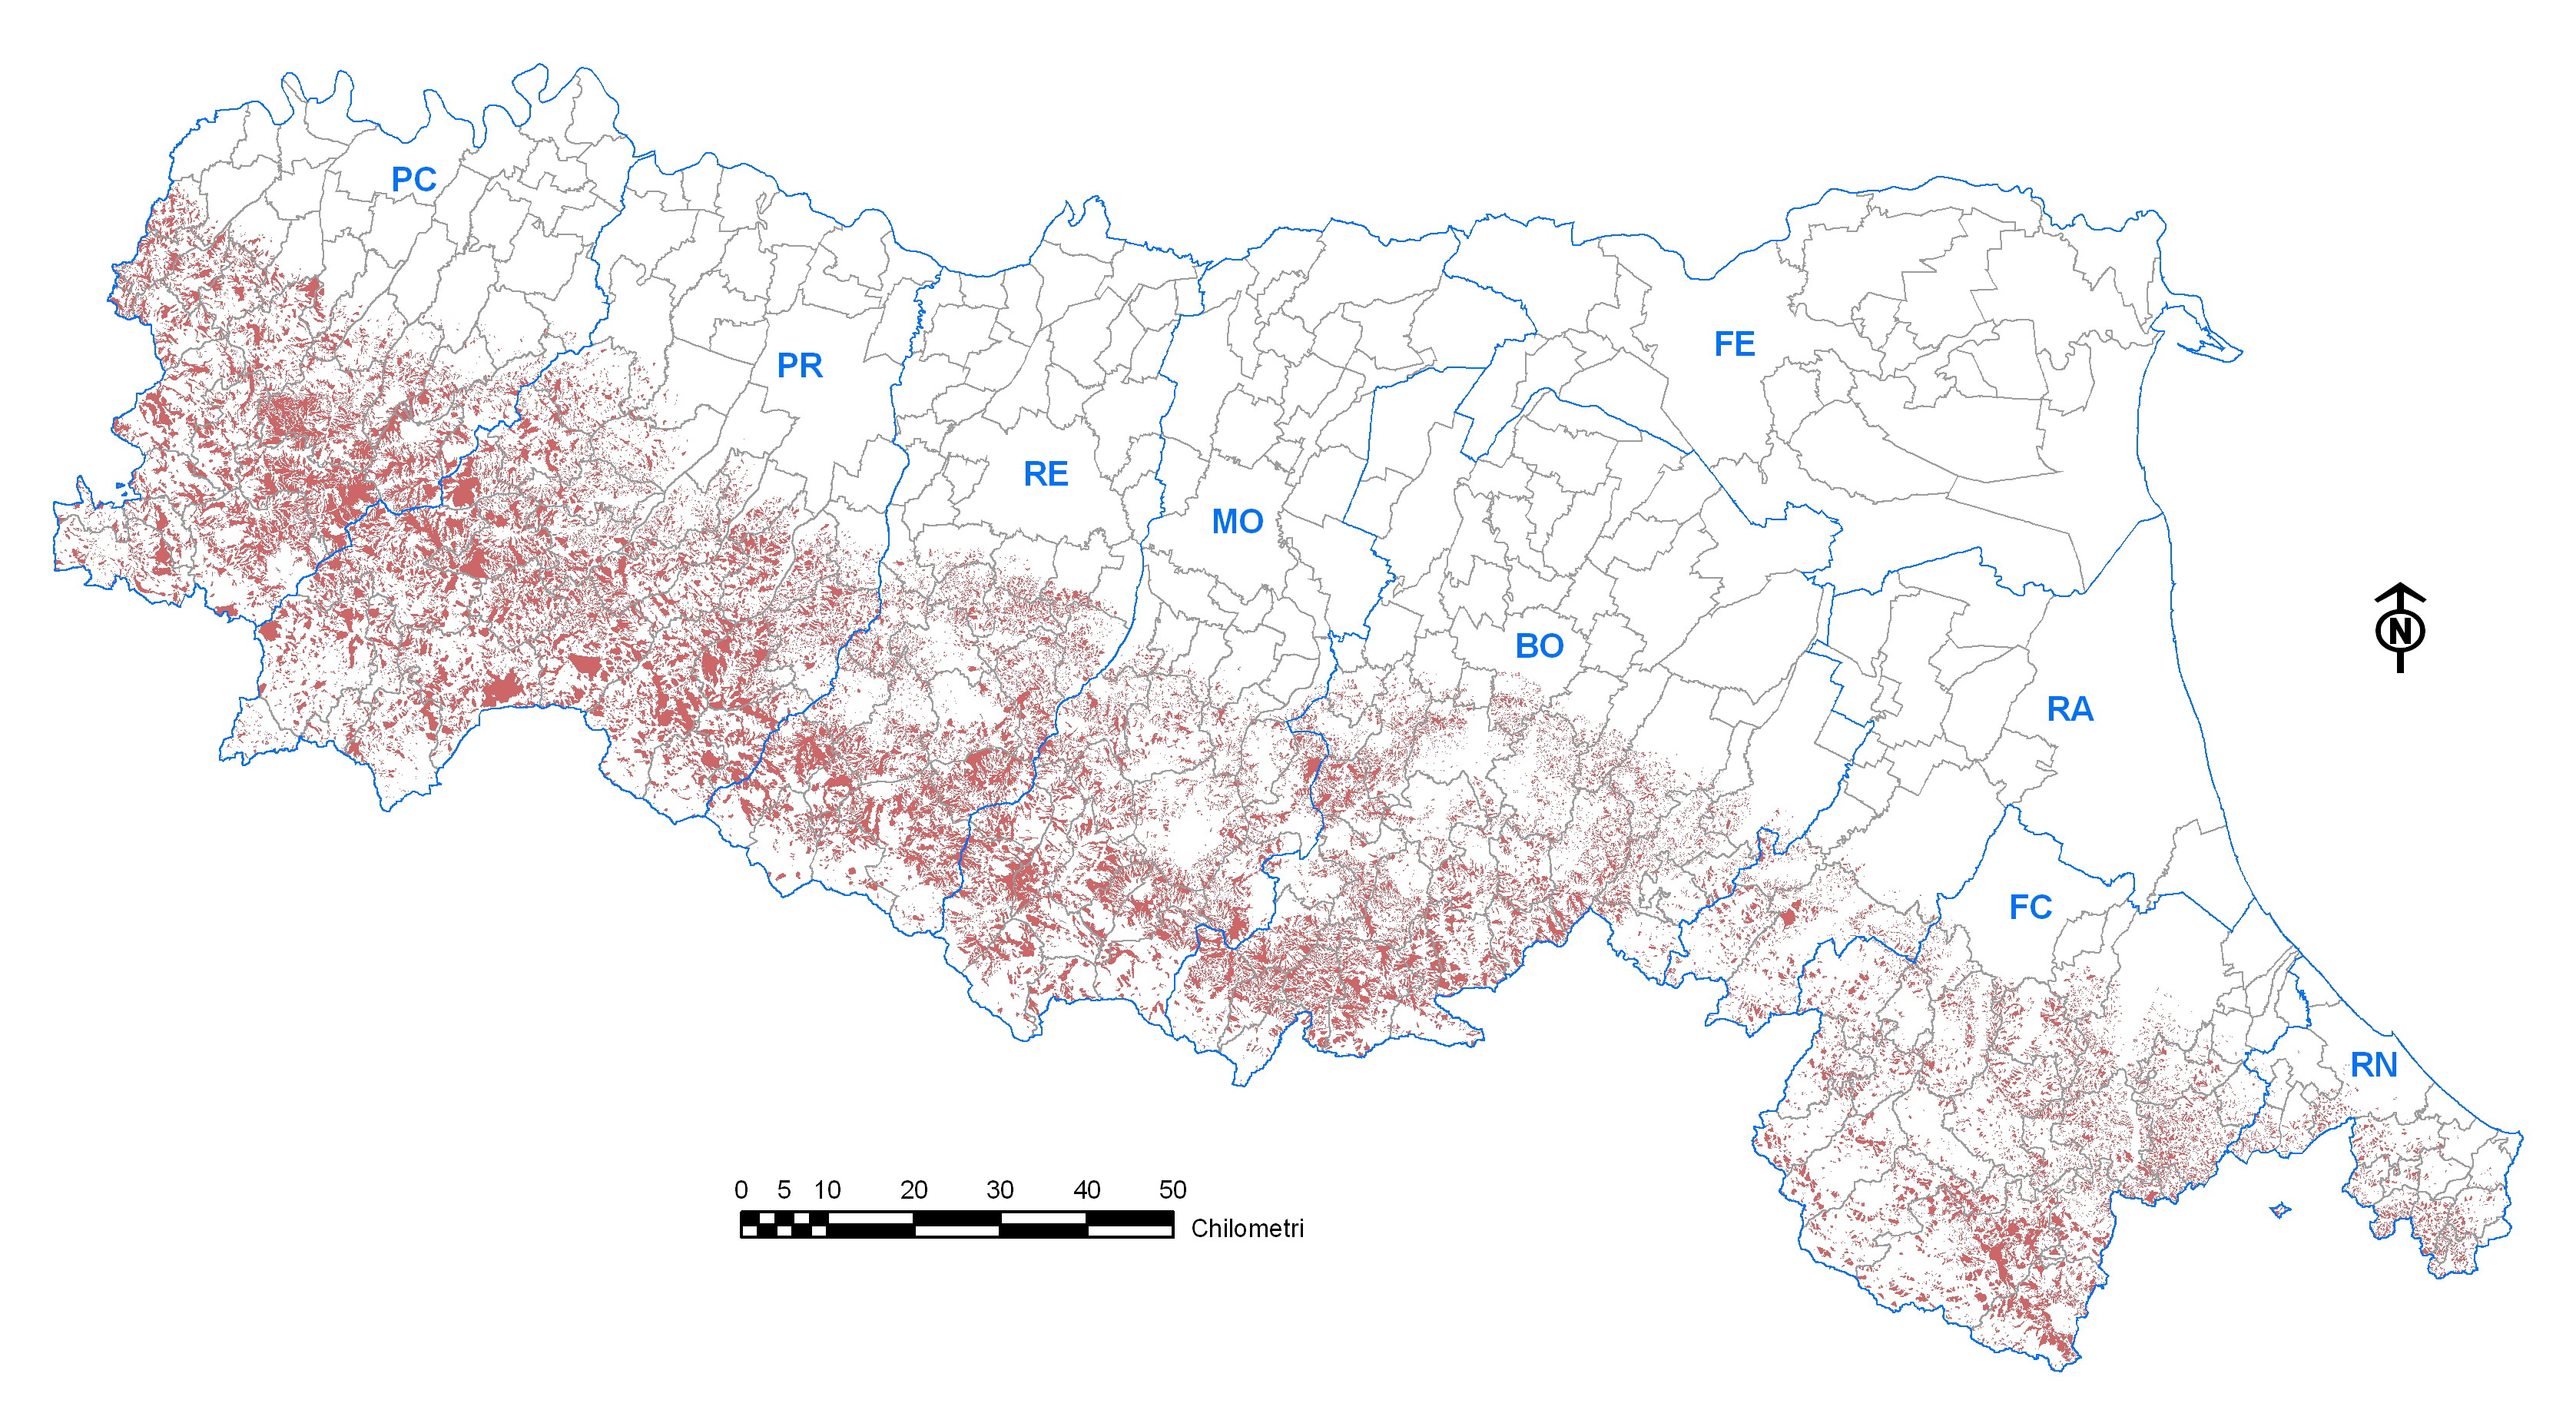 Landslides distribution in Emilia-Romagna